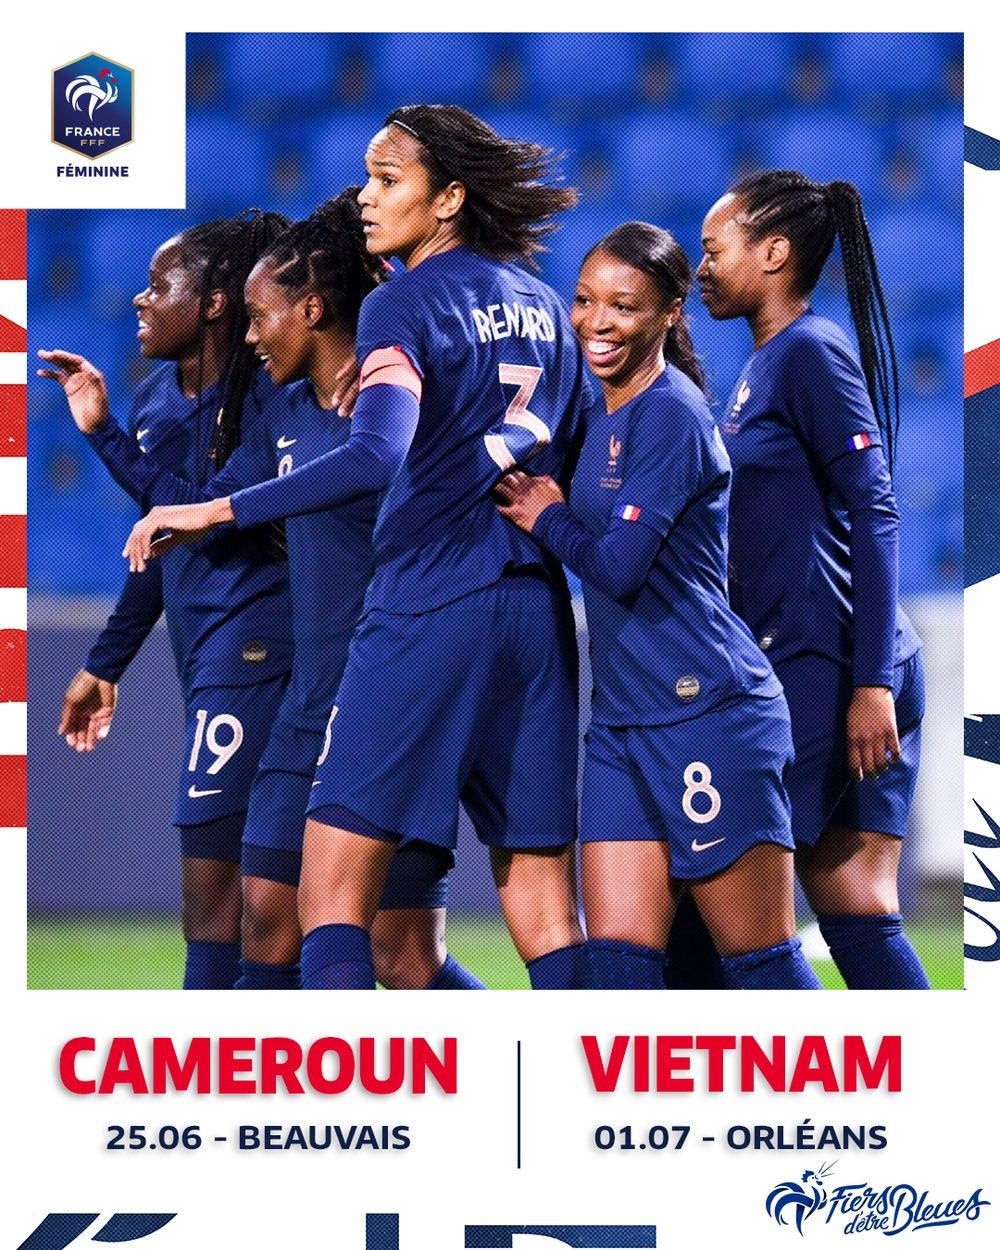 Thông báo của LĐBĐ Pháp về trận giao hữu với tuyển nữ Việt Nam.